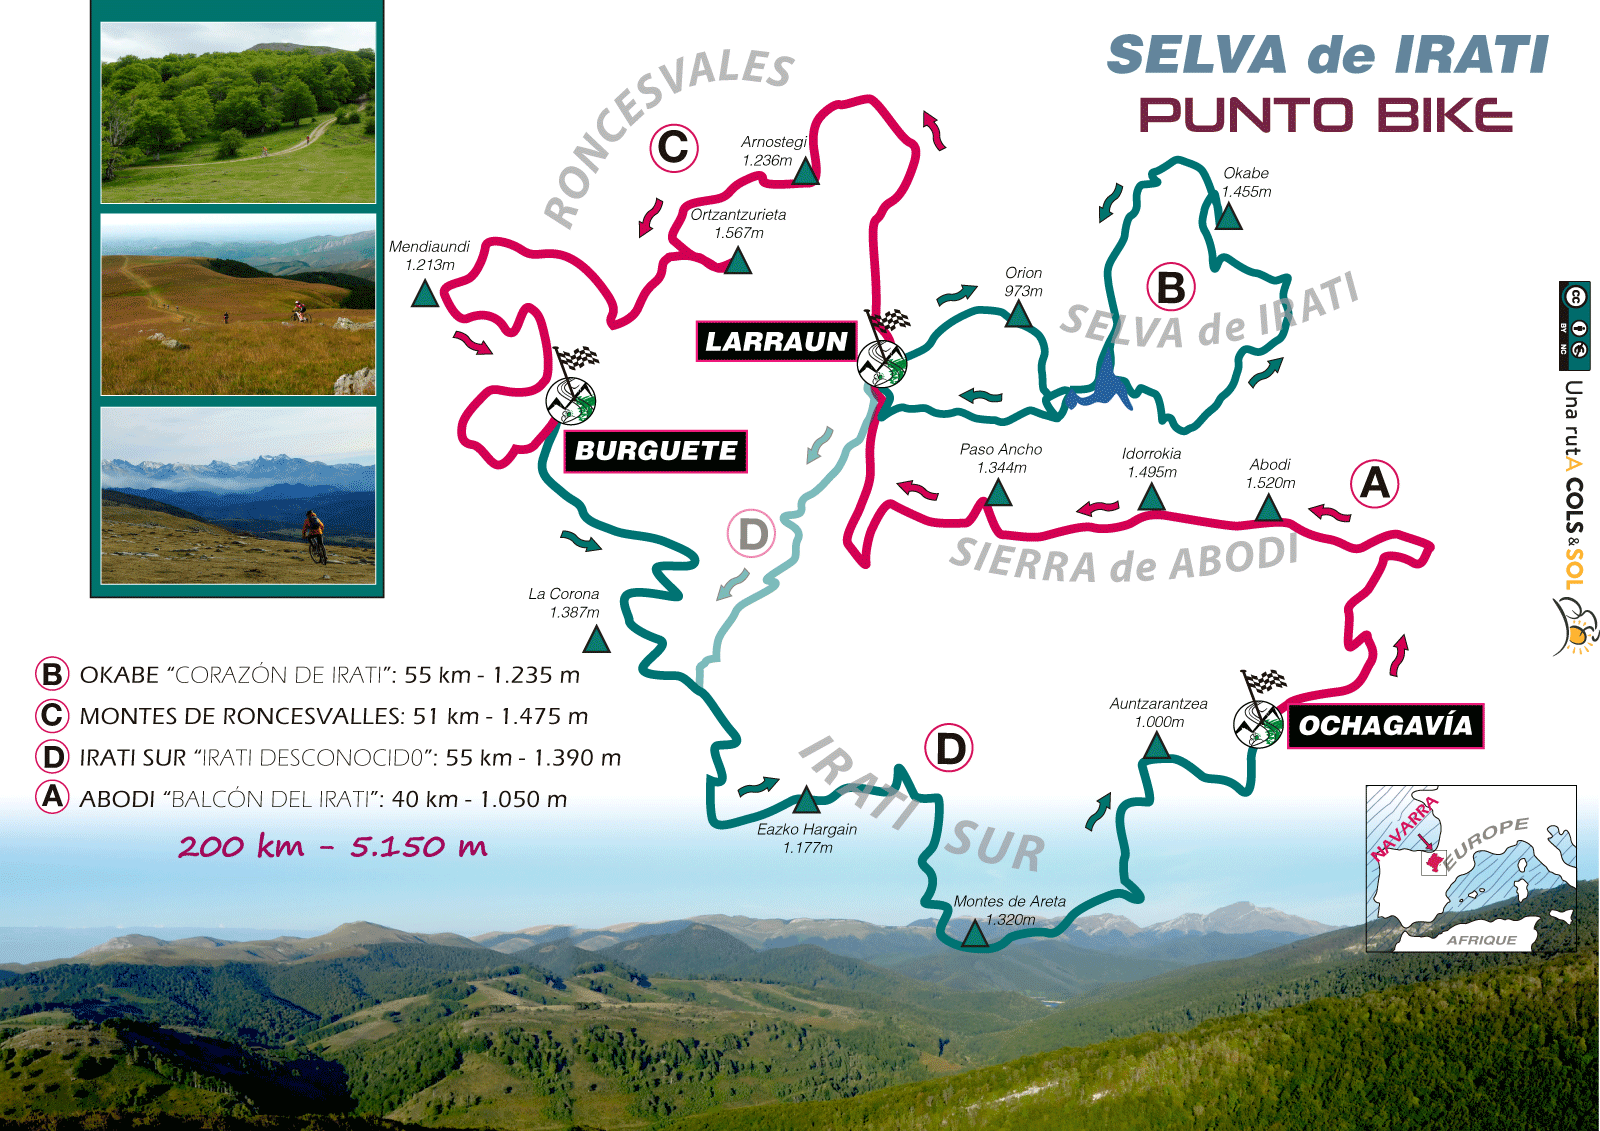 Map-Selva-de-Irati-BTT-Pirineos-PUNTO-BIKE